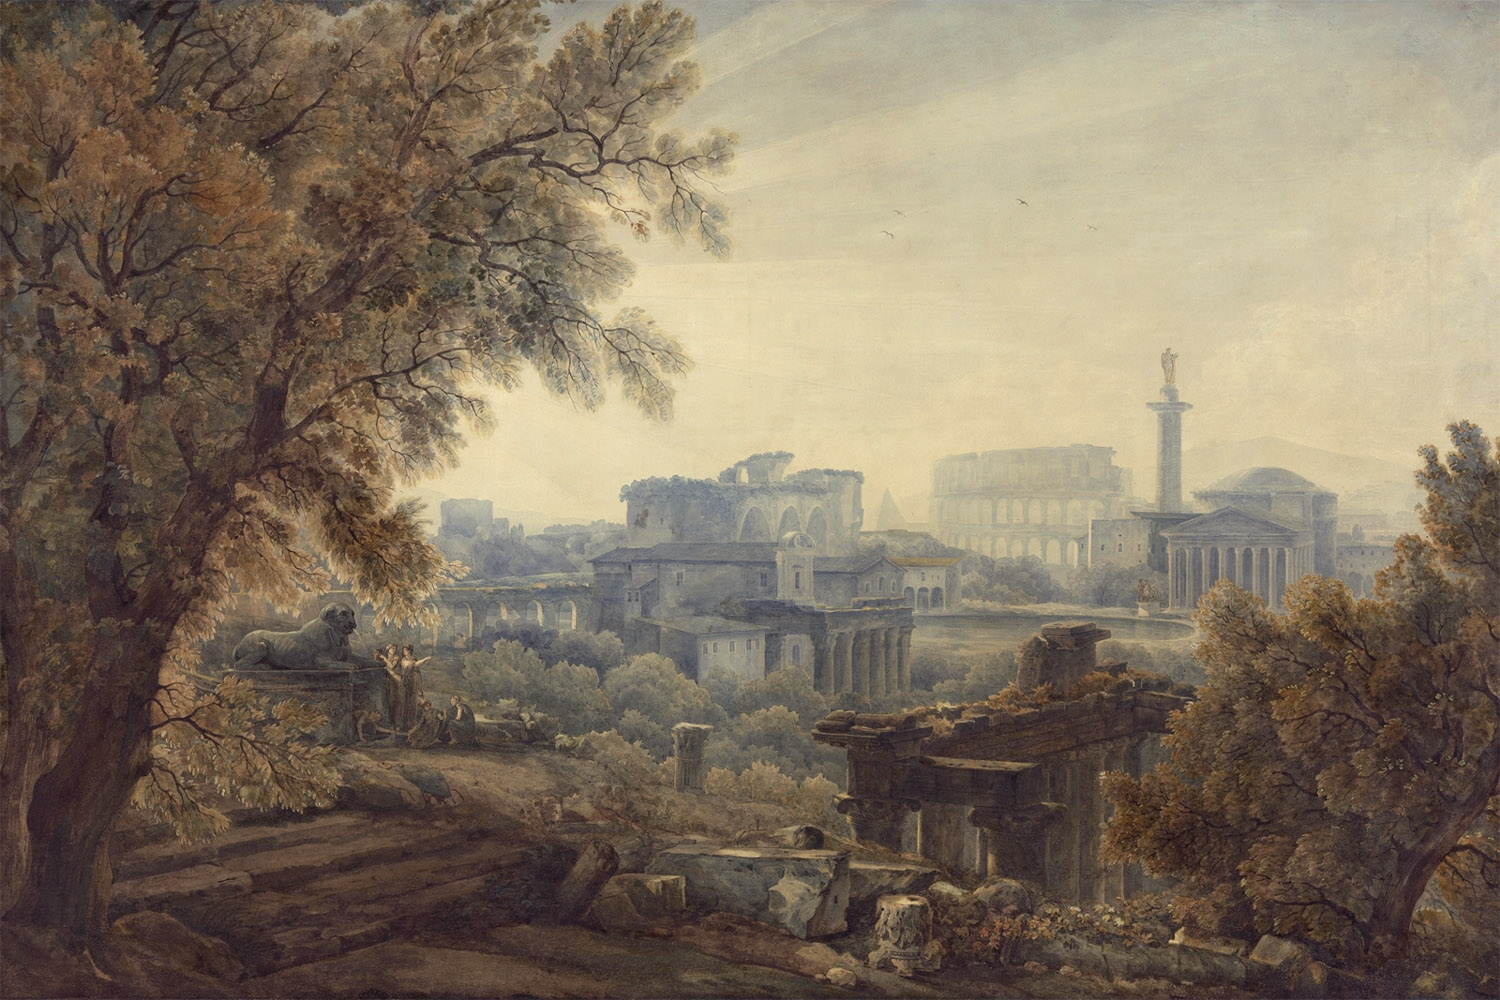 Abraham-Louis-Rodolphe Ducros, Caprice architectural de la Rome antique